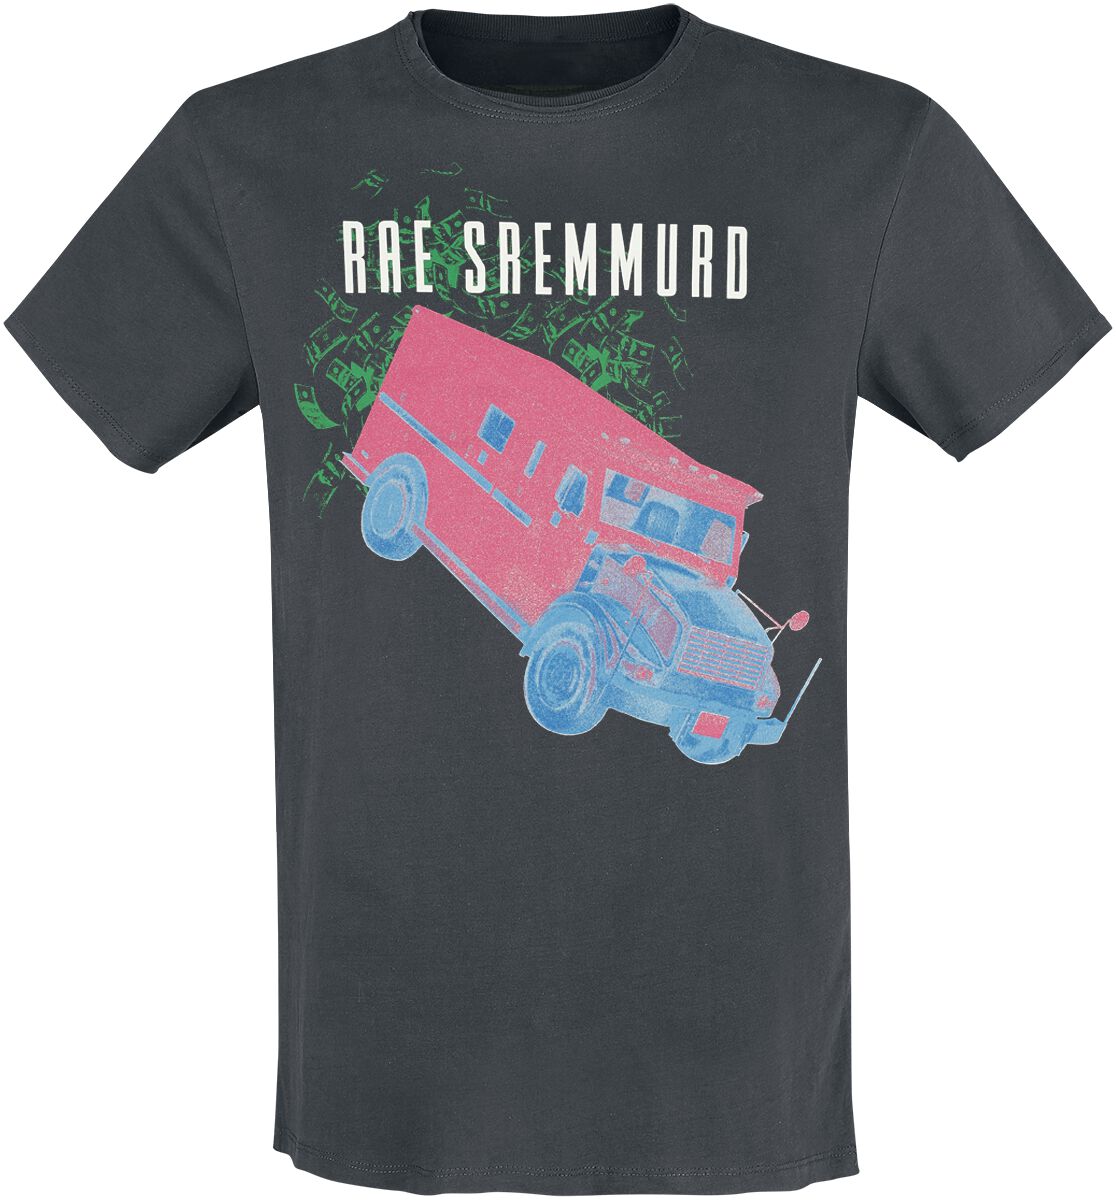 Rae Sremmurd T-Shirt - Amplified Collection - Cash Heist - S bis 3XL - für Männer - Größe M - charcoal  - Lizenziertes Merchandise!